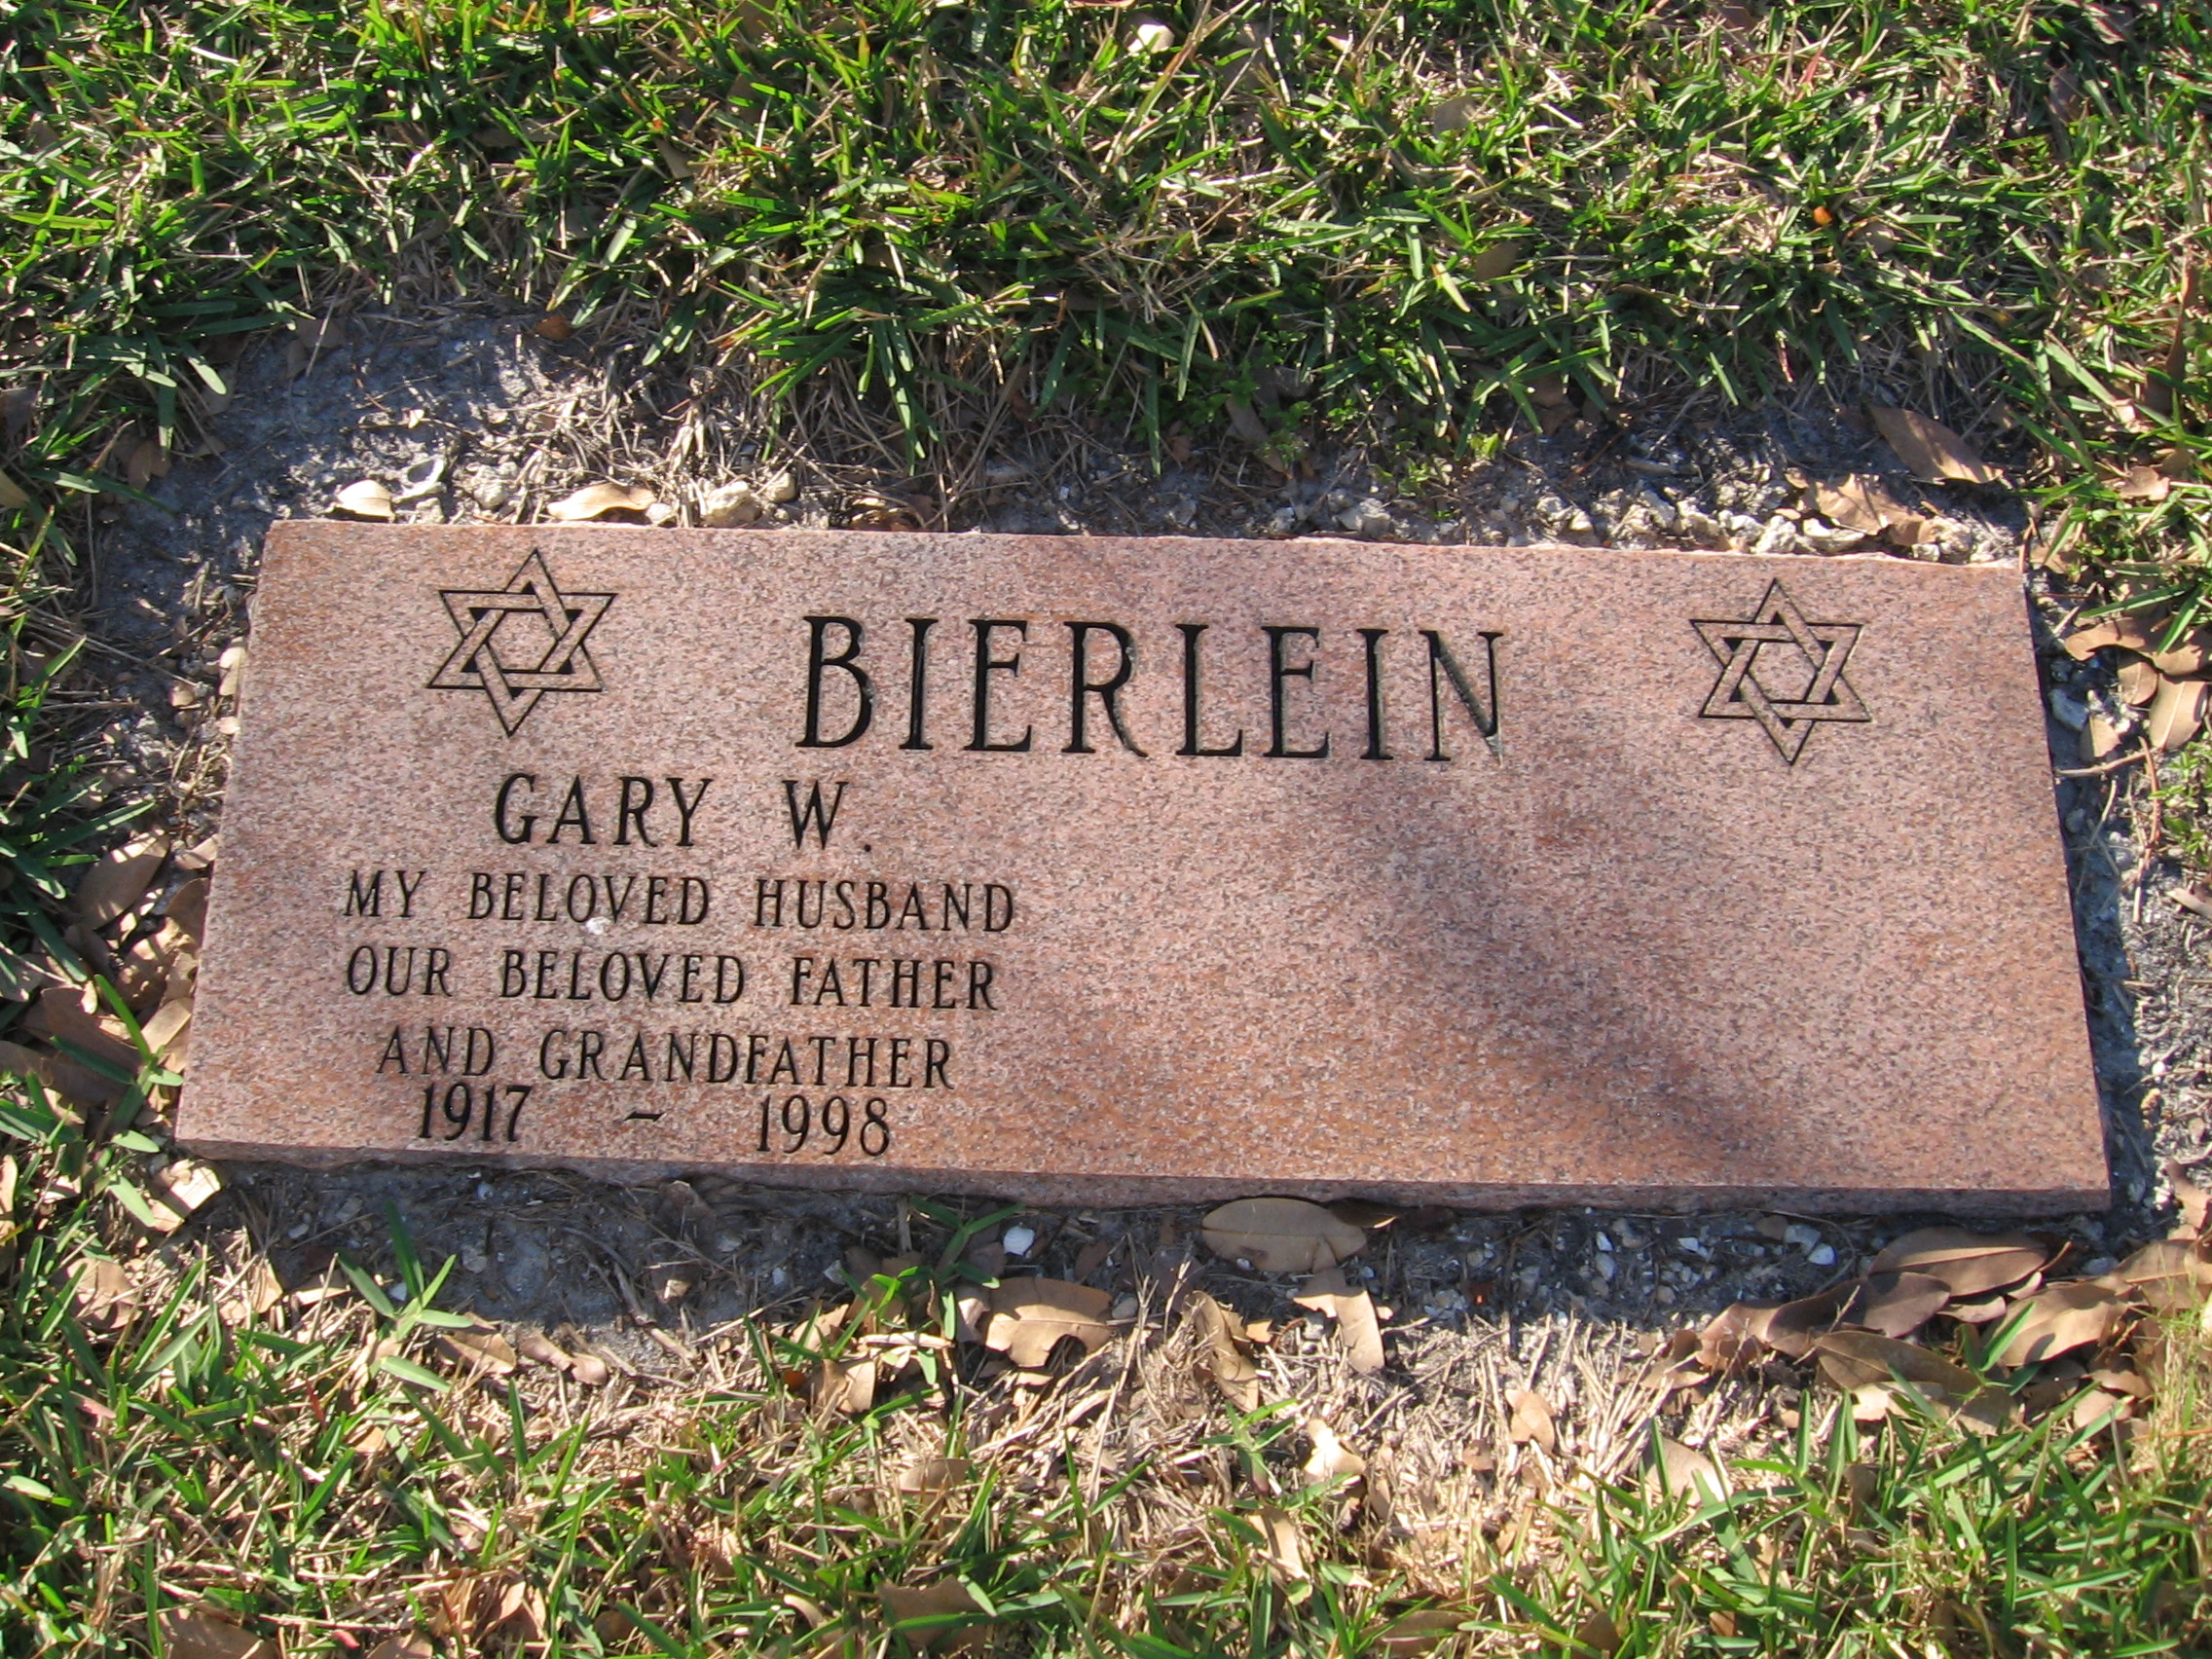 Gary W Bierlein